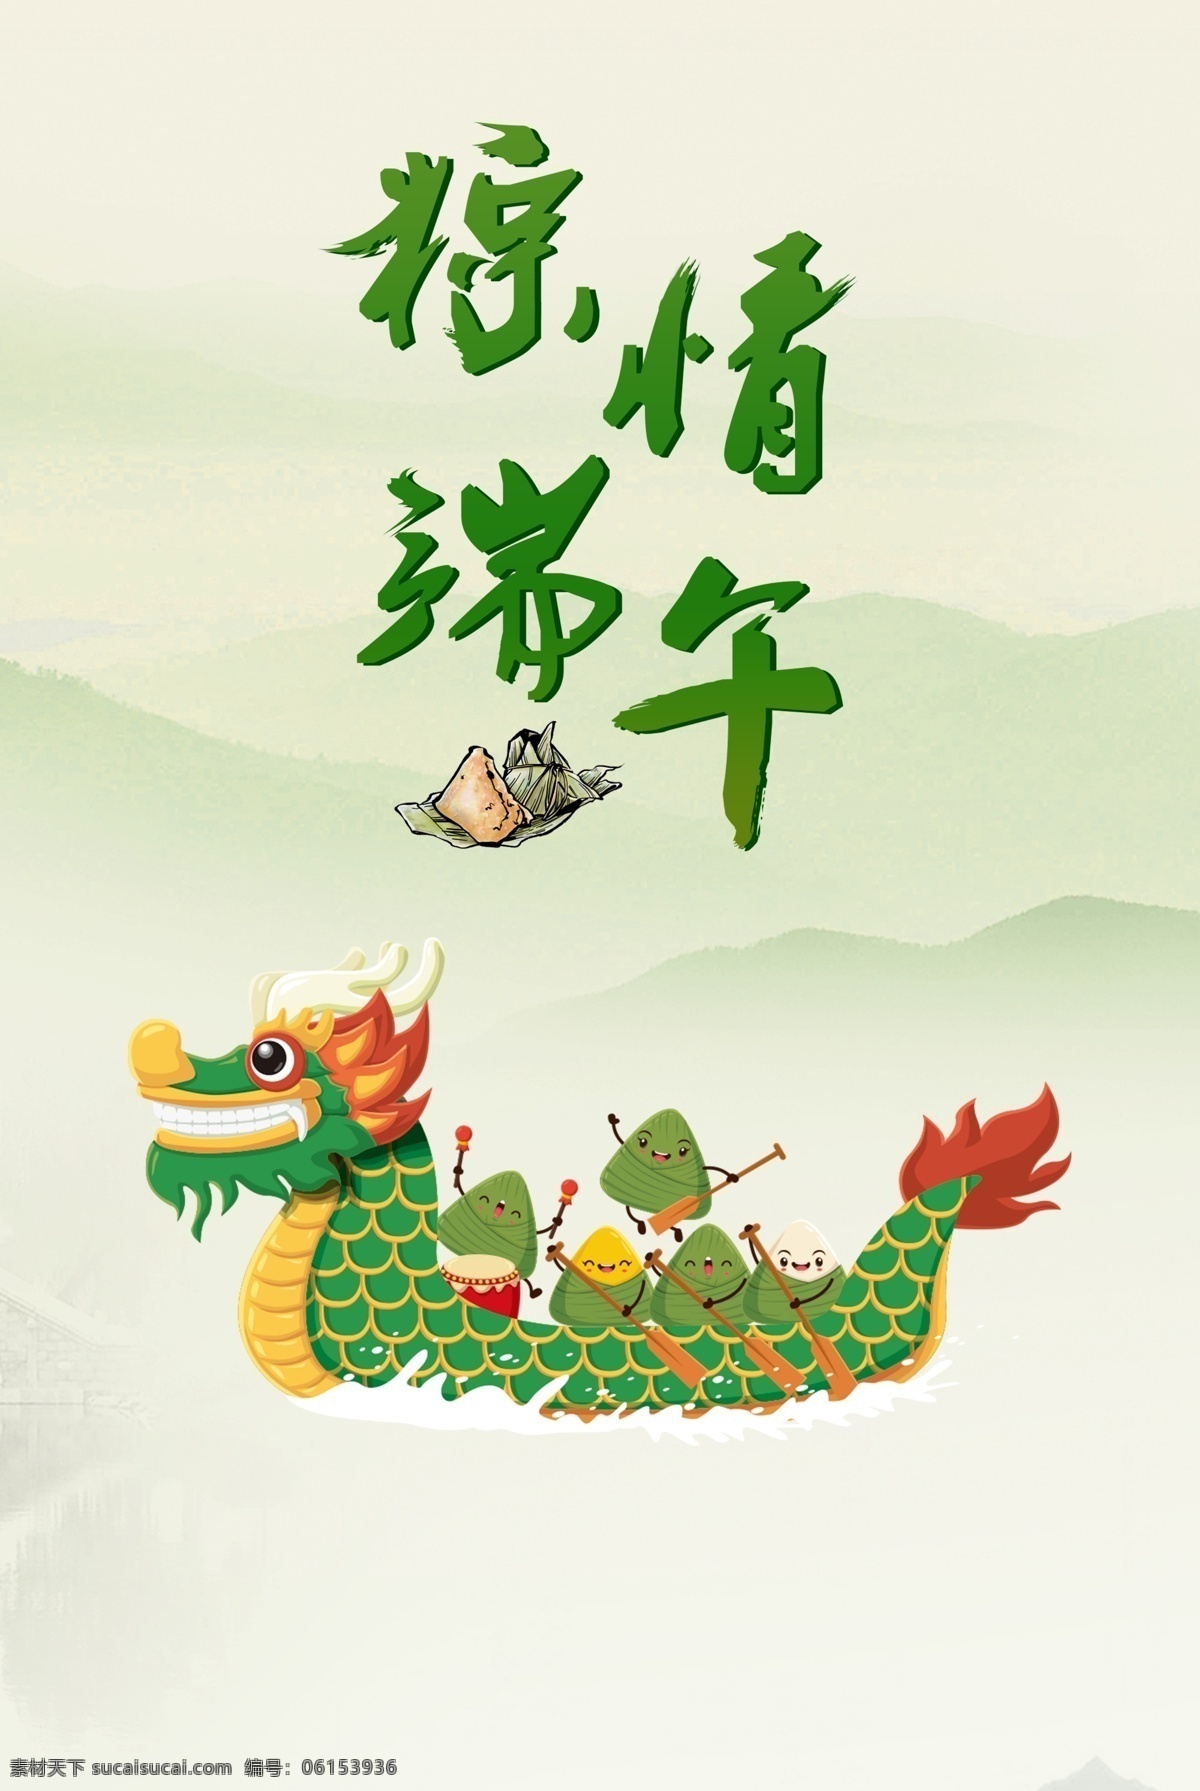 欢庆 端午 节赛 龙舟 粽子 端午节 赛龙舟 节日海报 传统节日 粽子节 划龙舟 绿色